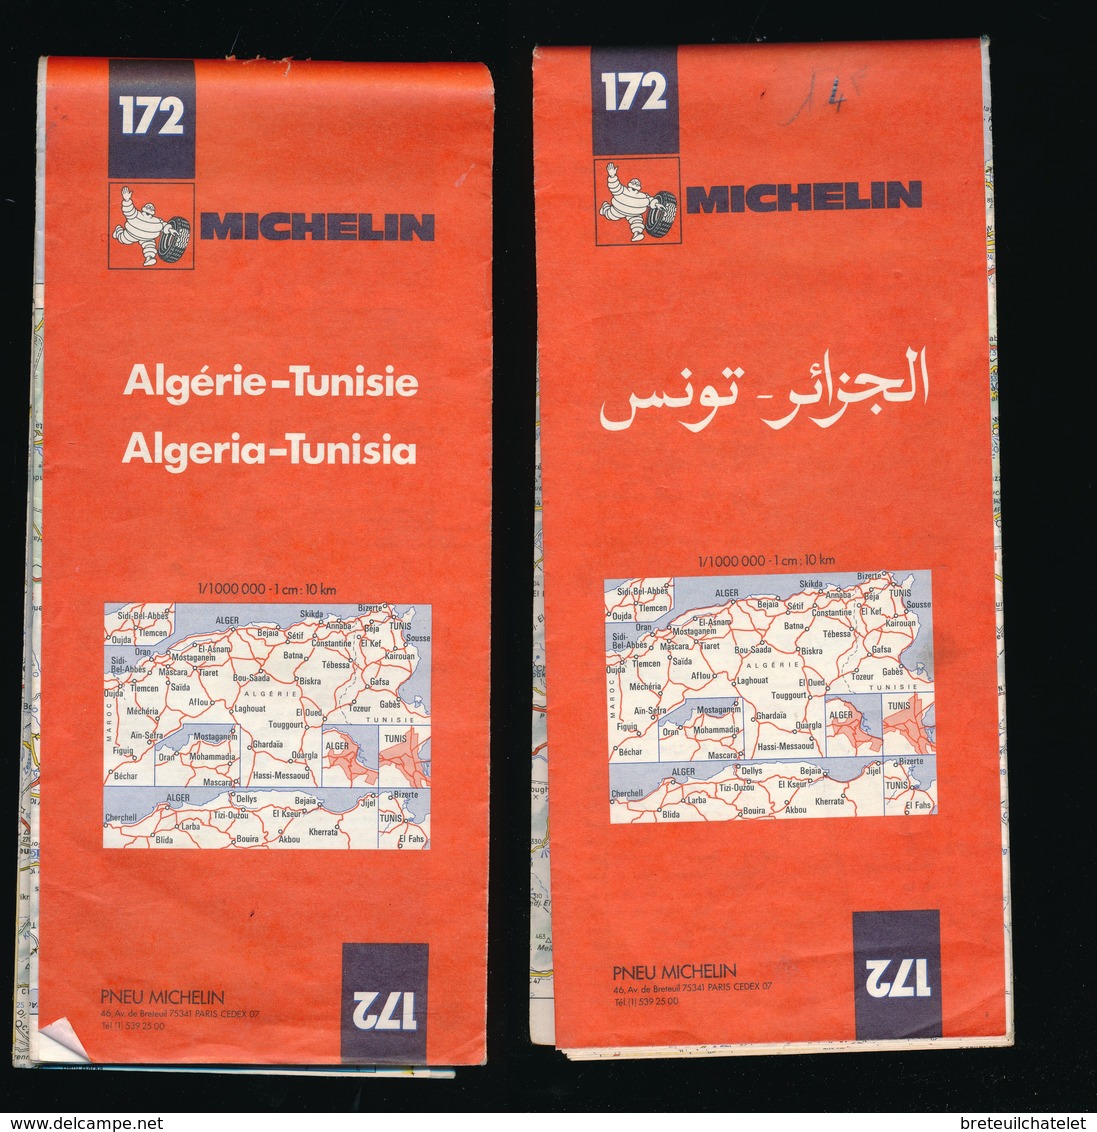 Carte Routière Michelin 172  Algérie - Tunisie - 1978 - Algéria Tunisia - TBE - Cartes Routières